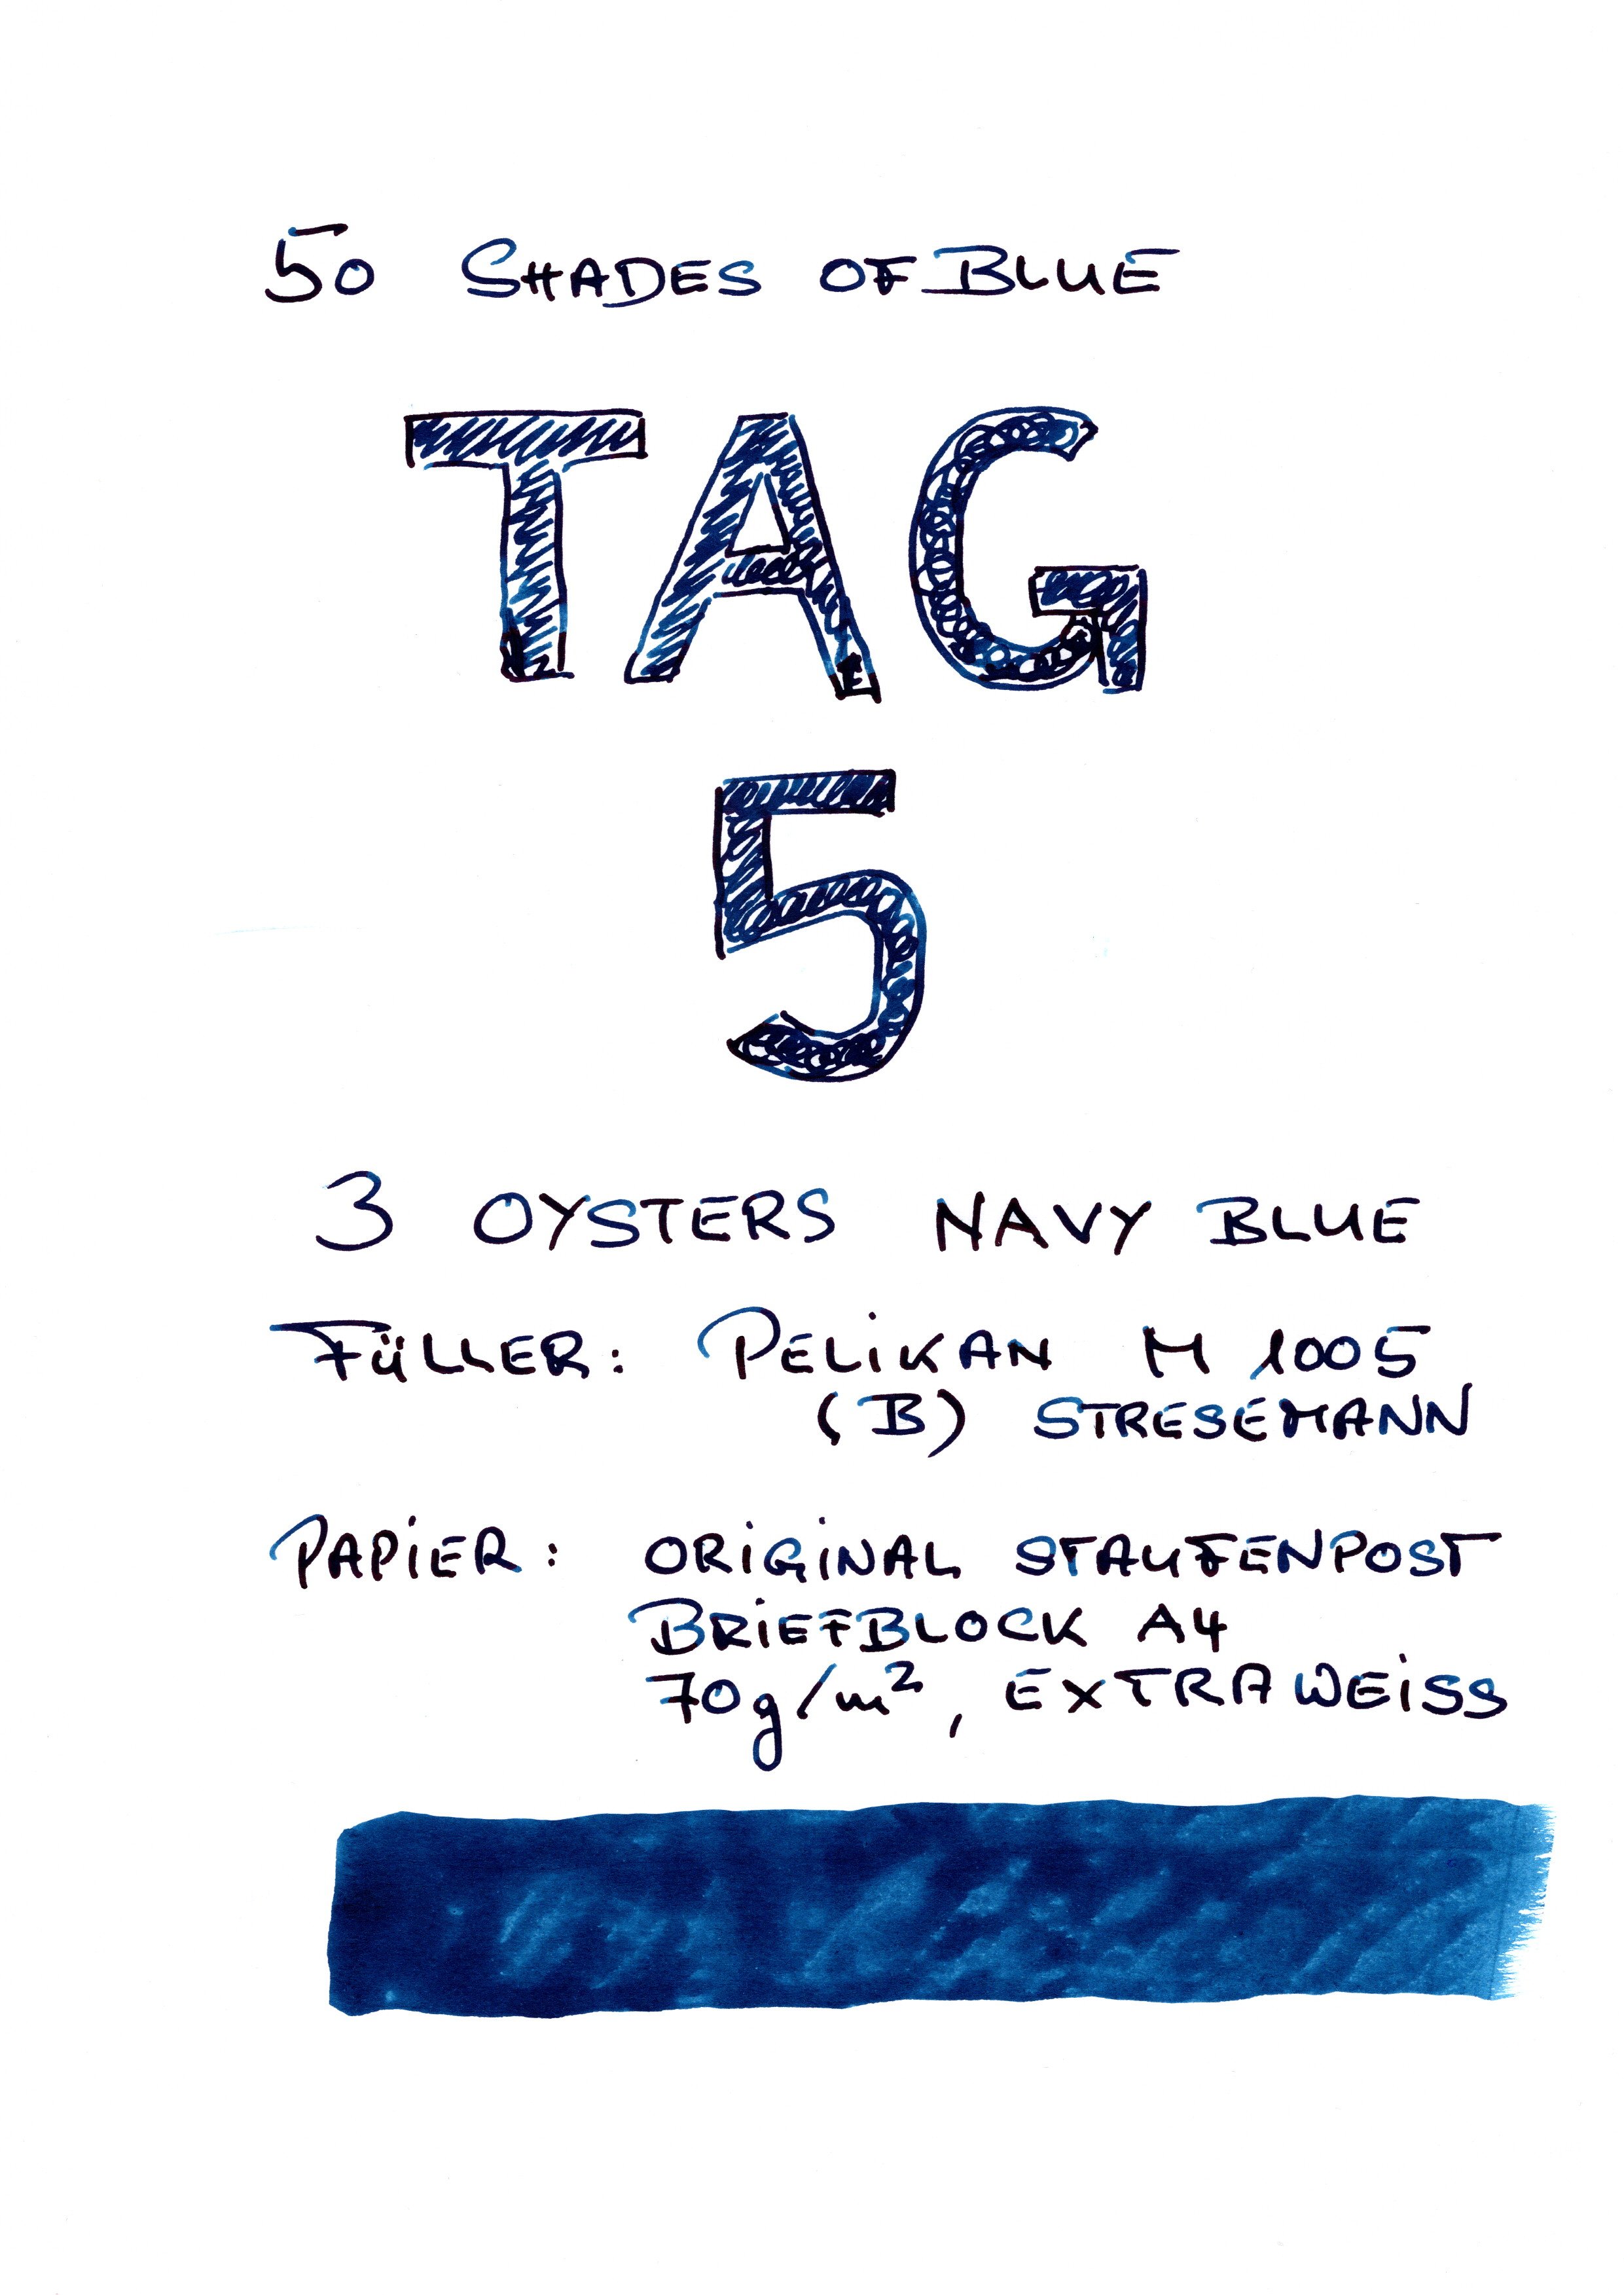 3-Oysters_Navy-Blue_Blatt1.jpg